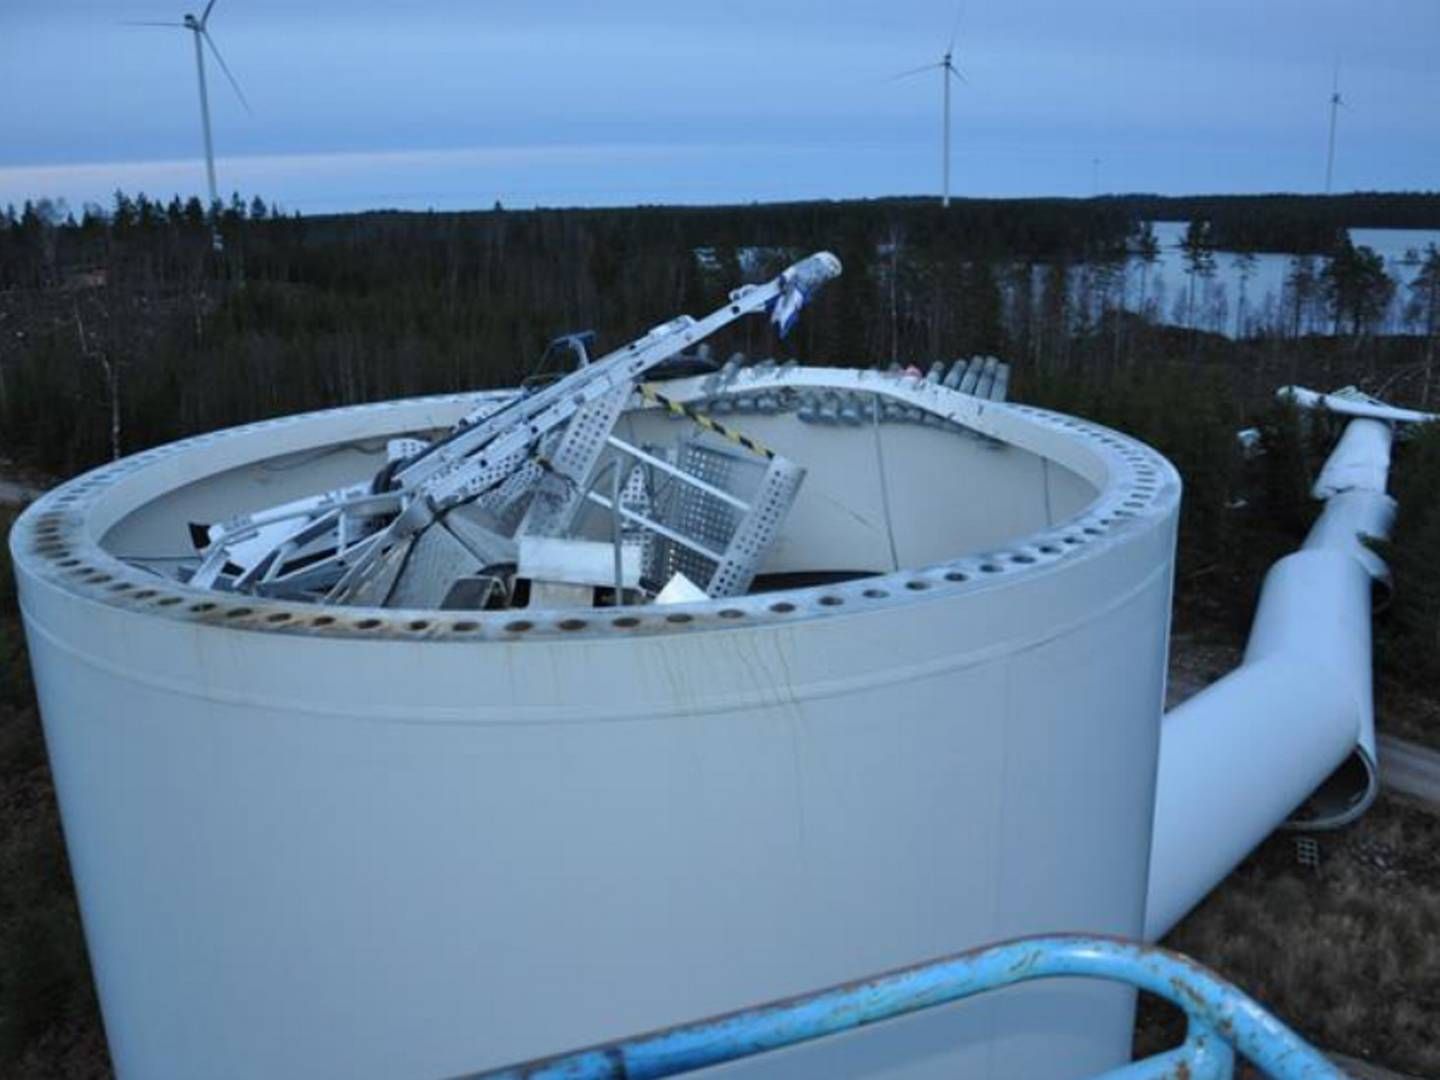 MILLIARDKOSTNADER: Danmarkds vindturbinprodusent måtte bruke 1,5 milliarder norske kroner på reparasjoner og utskiftinger. Det er godt over de tre prosentene av maksgrensen de egentlig har satt til garantiavsetninger. | Foto: Vestas/statens Haverikommission